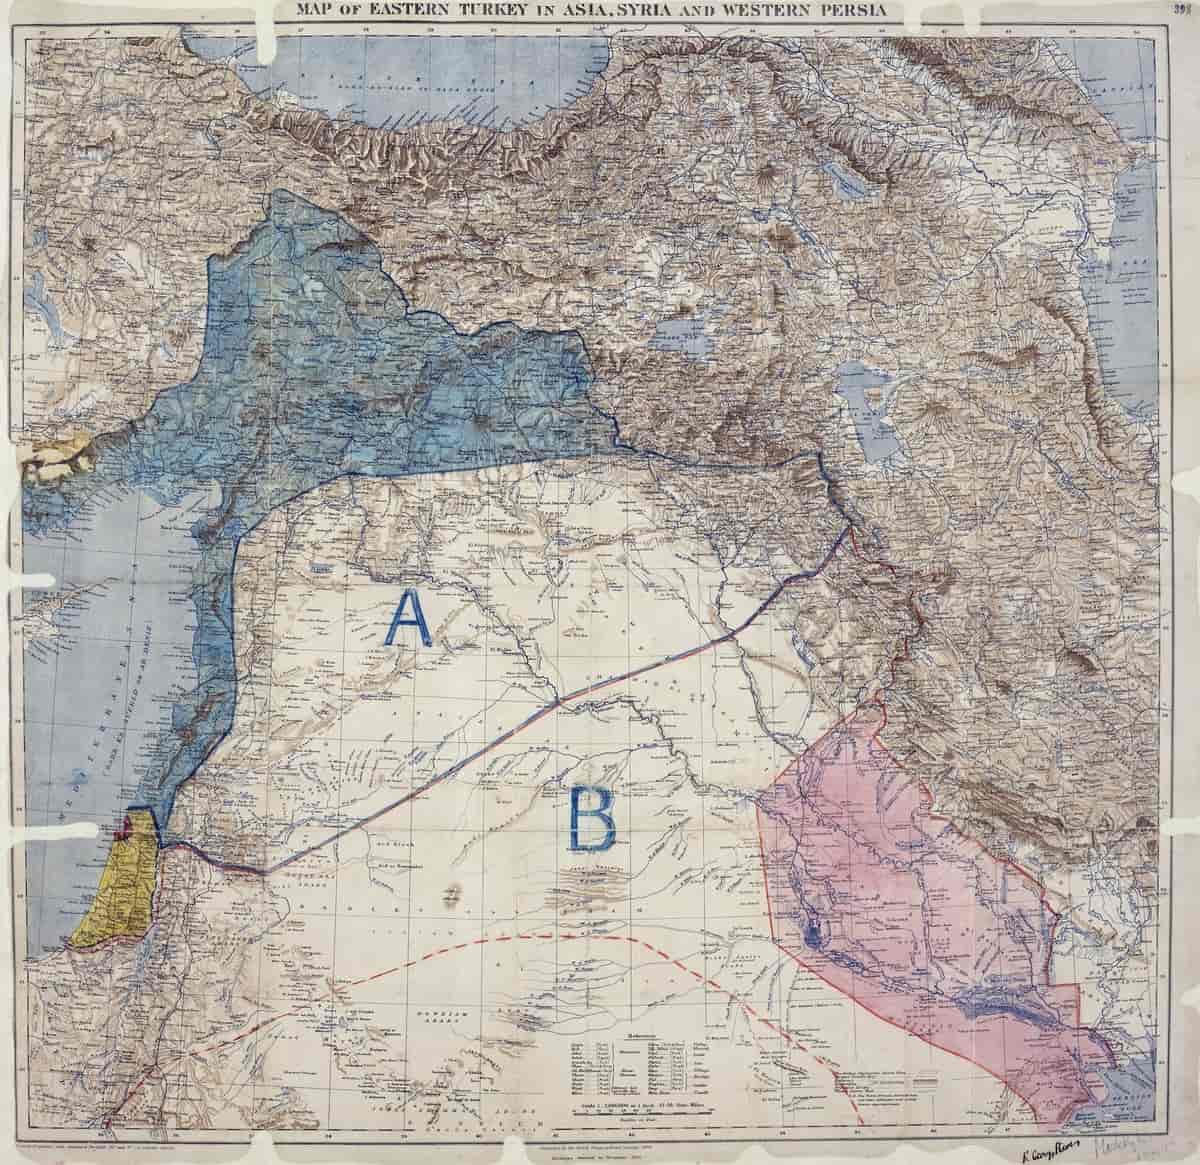 Det signerte kartet som fulgte Sykes-Picot-avtalen